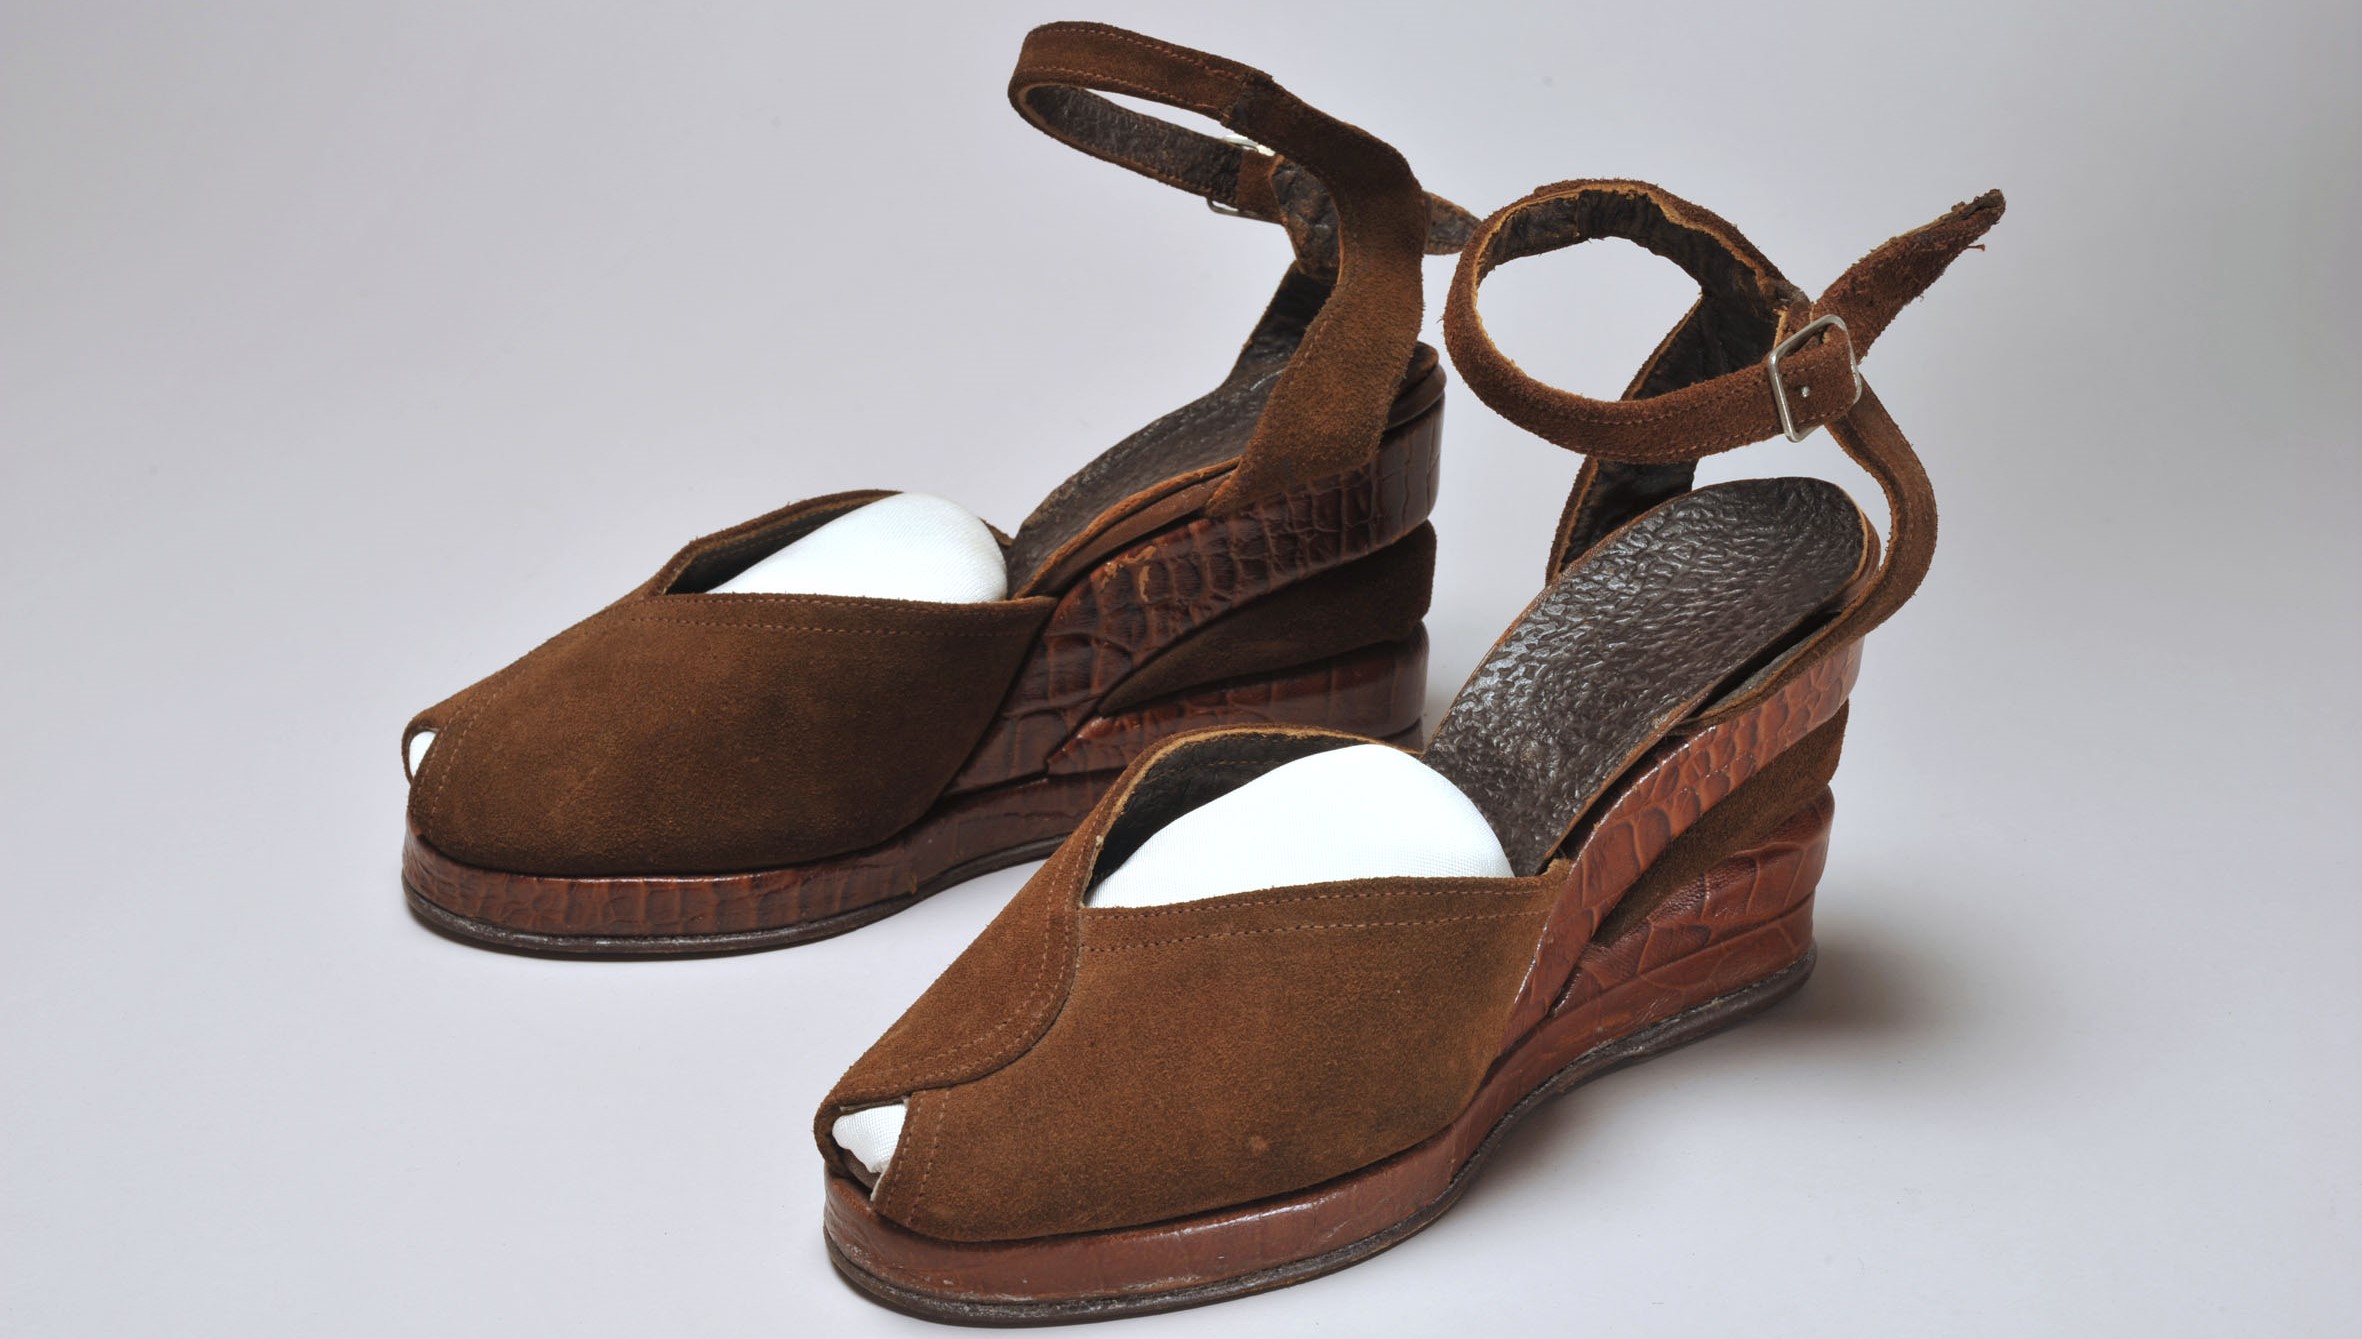 A pair of 1948 wedge heels